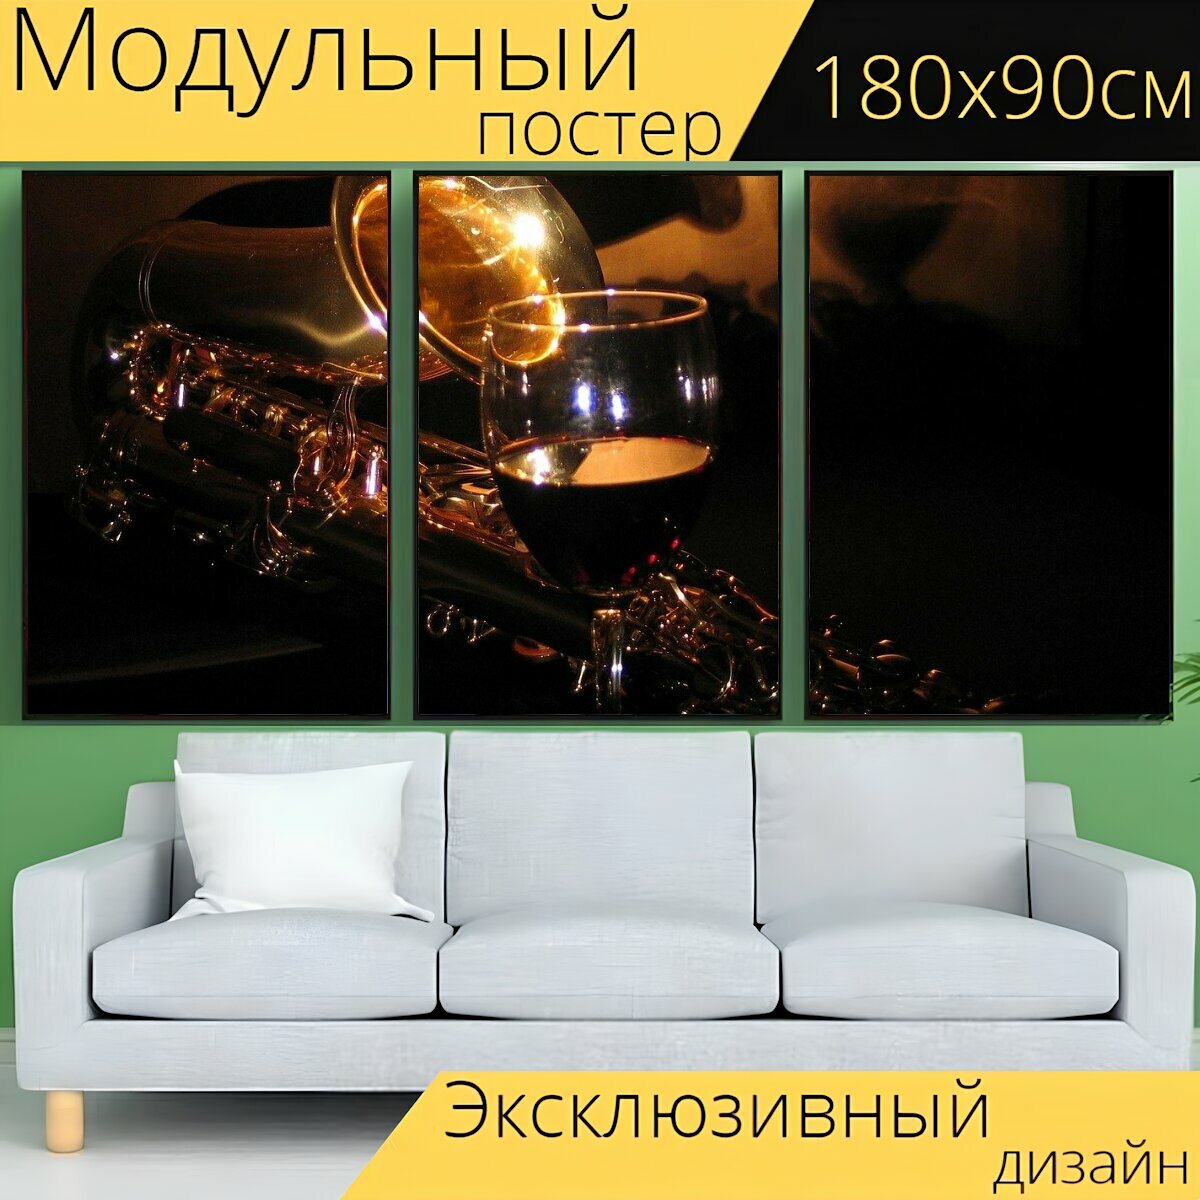 Модульный постер "Саксофон, музыка, инструменты" 180 x 90 см. для интерьера